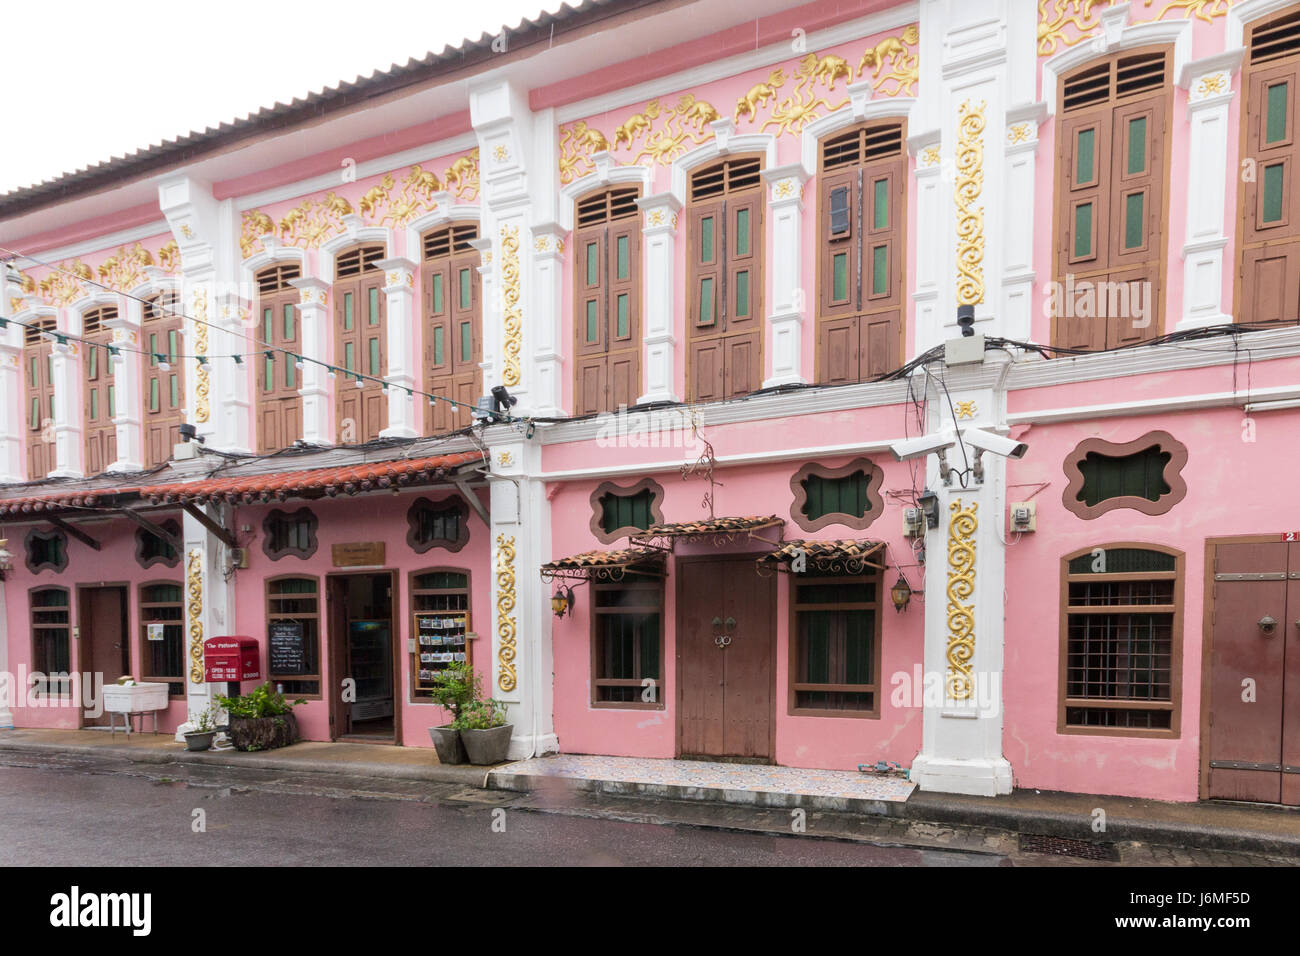 Sino Portuguese architecture shophouses in Soi Romanee, Old Phuket, town, Thailand Stock Photo